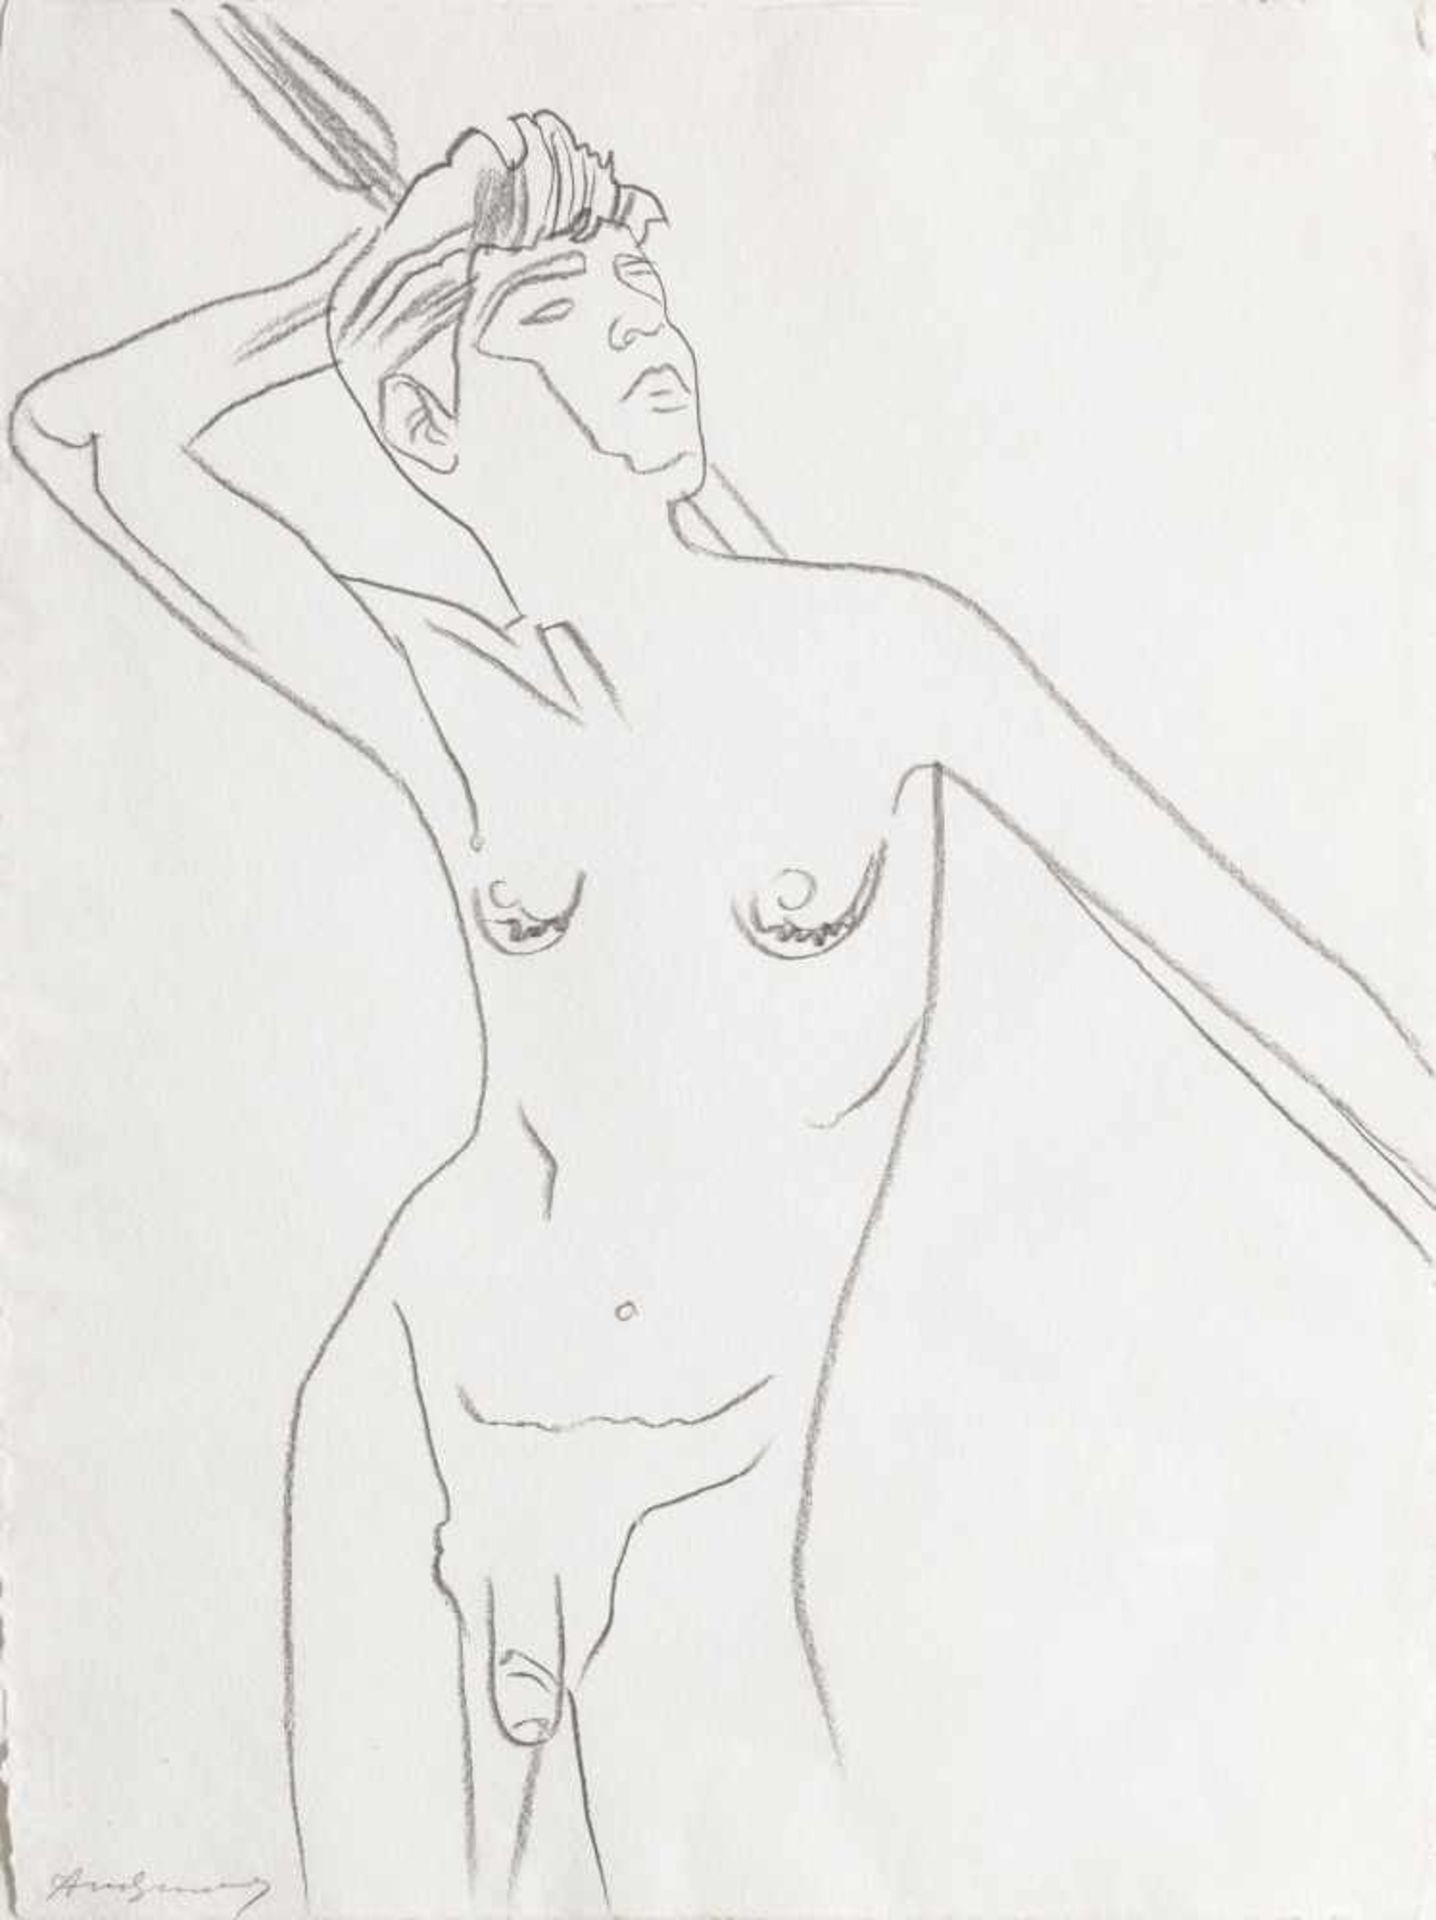 Andy Warhol (Livorno 1924 )Hommage an von Gloeden, 1978;Kohlezeichnung auf Büttenpapier, 60 x 80